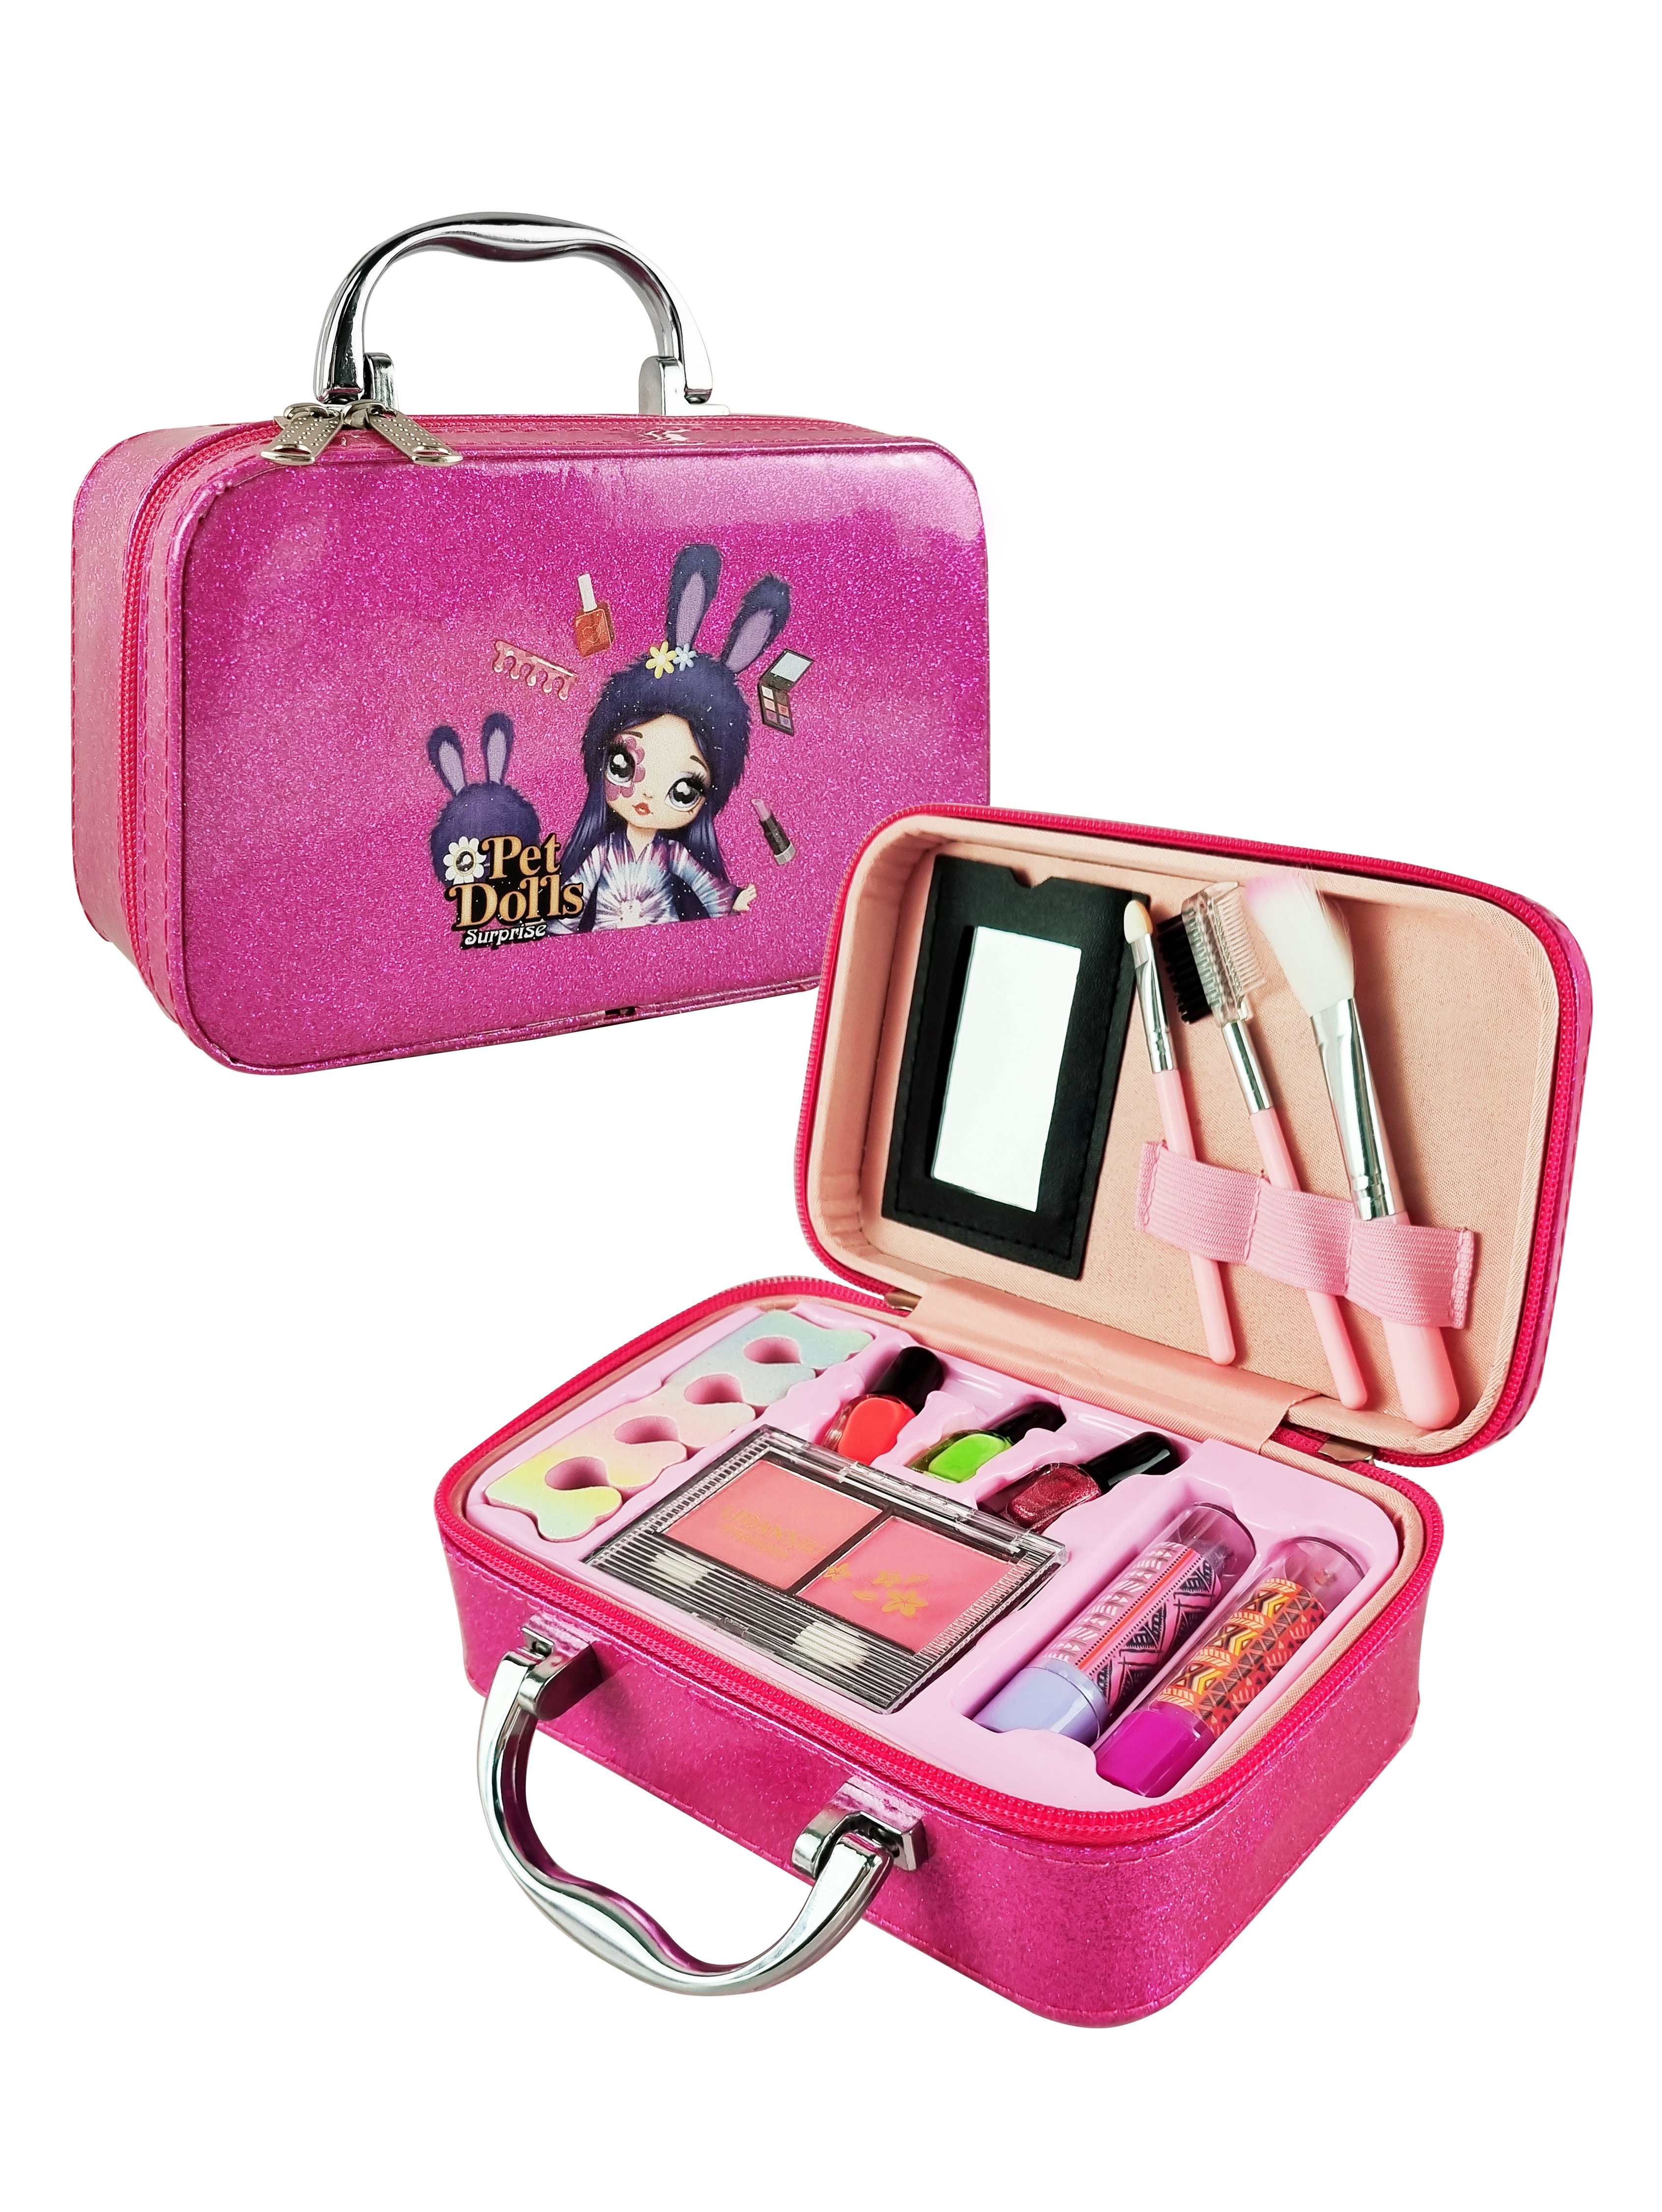 Детская декоративная косметика PetDolls, 12 предметов, пурпурный чемоданчик 5-905-1